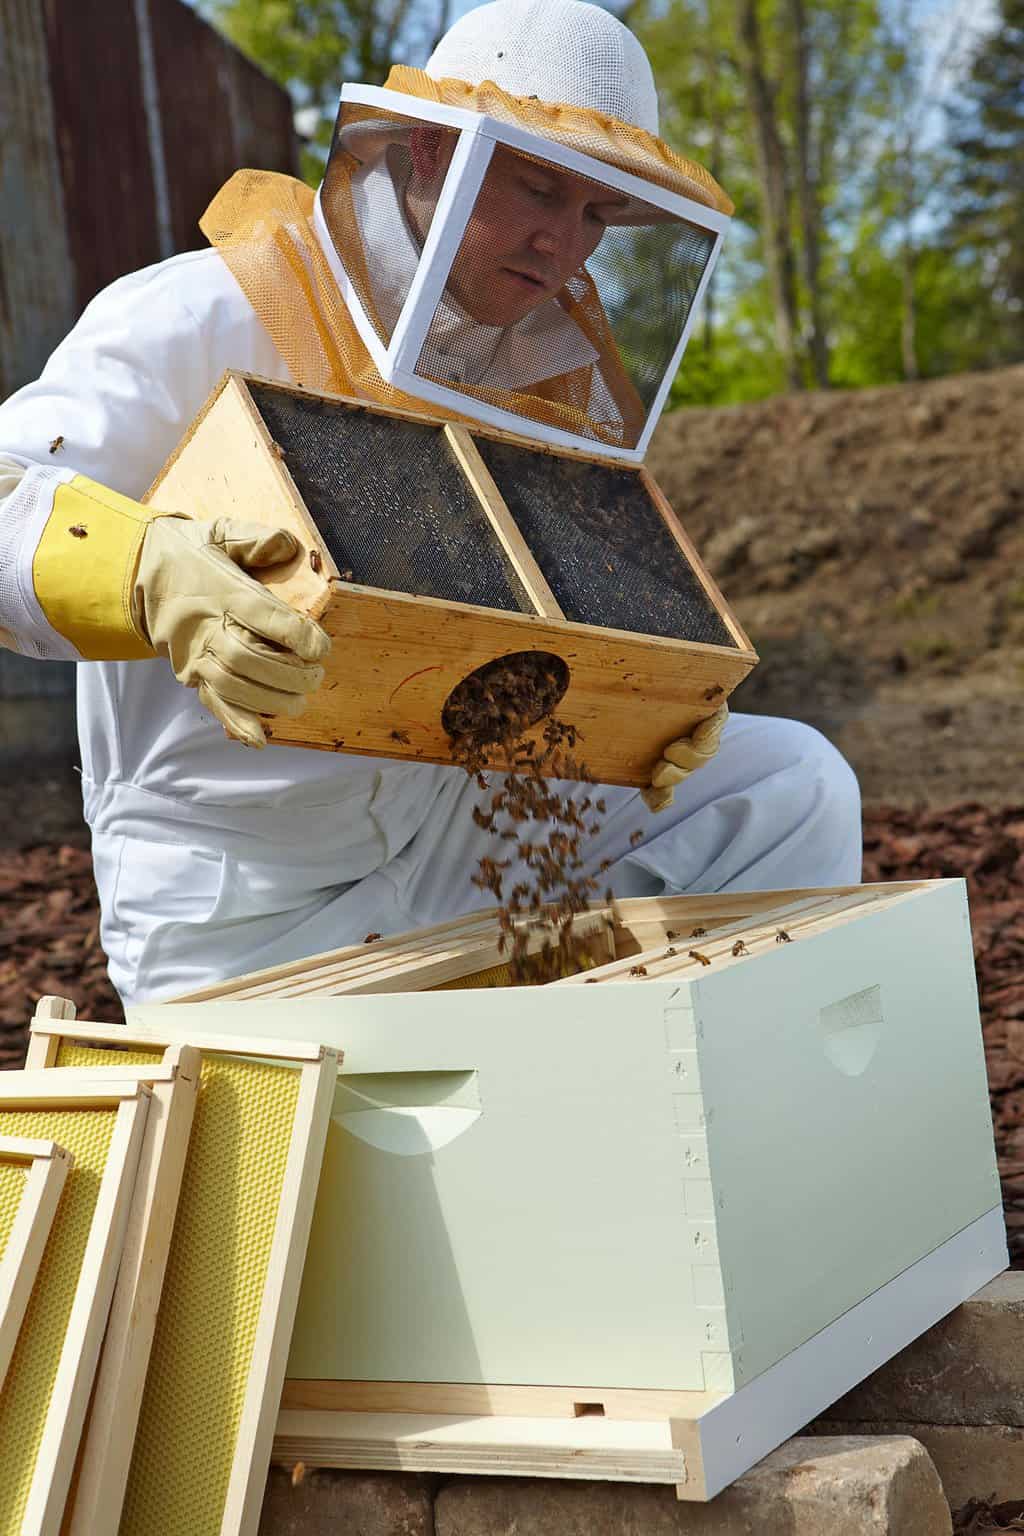 Preparing Your Hive